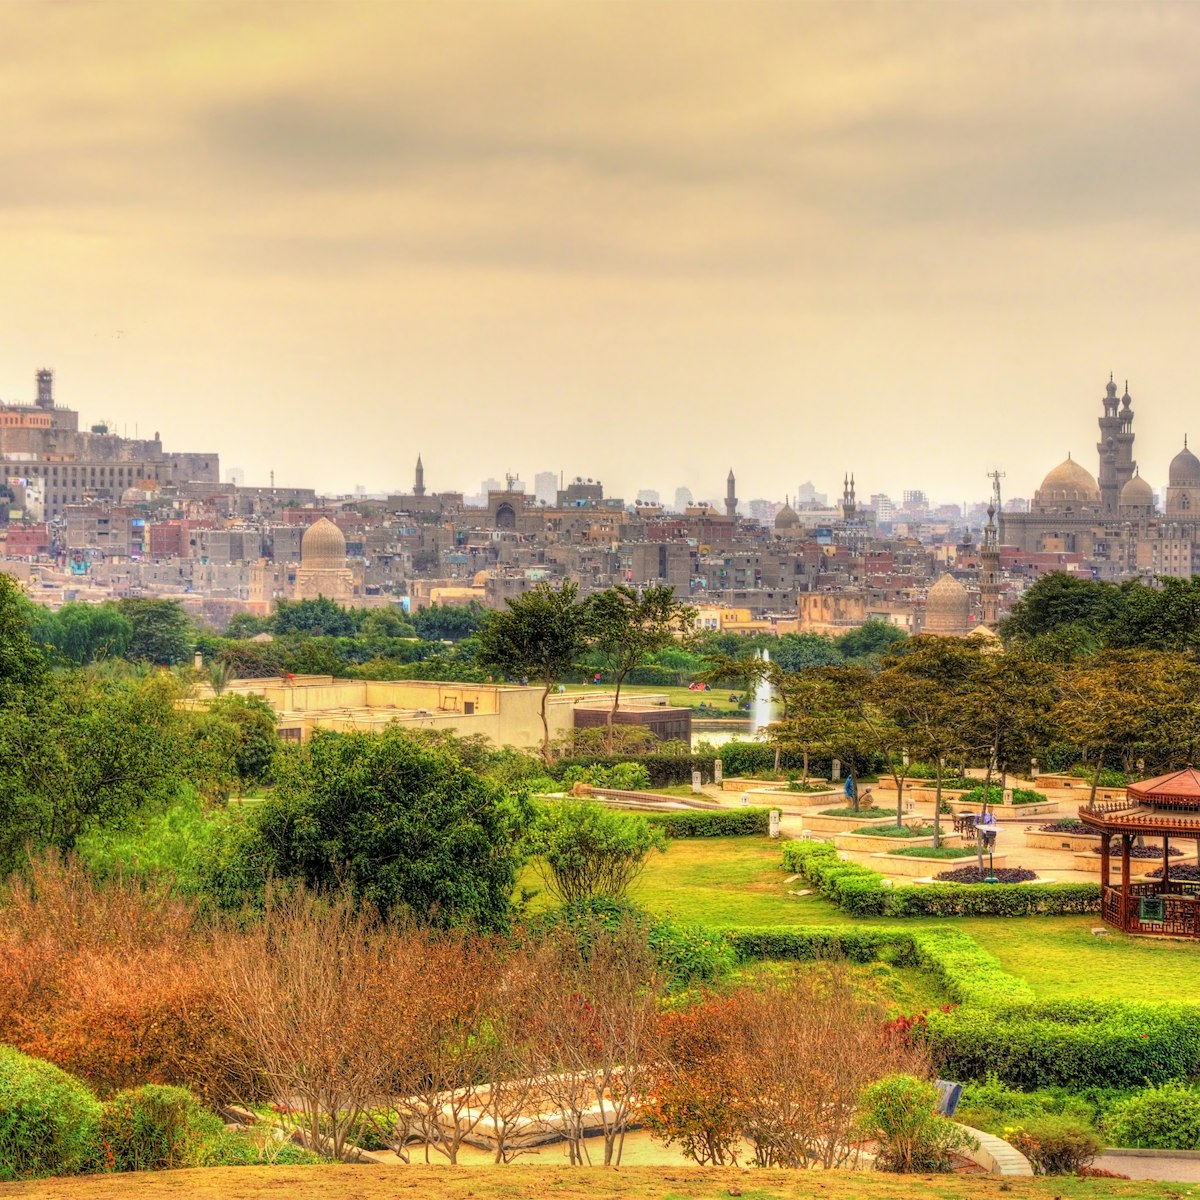 View of the Citadel from Al-Azhar Park